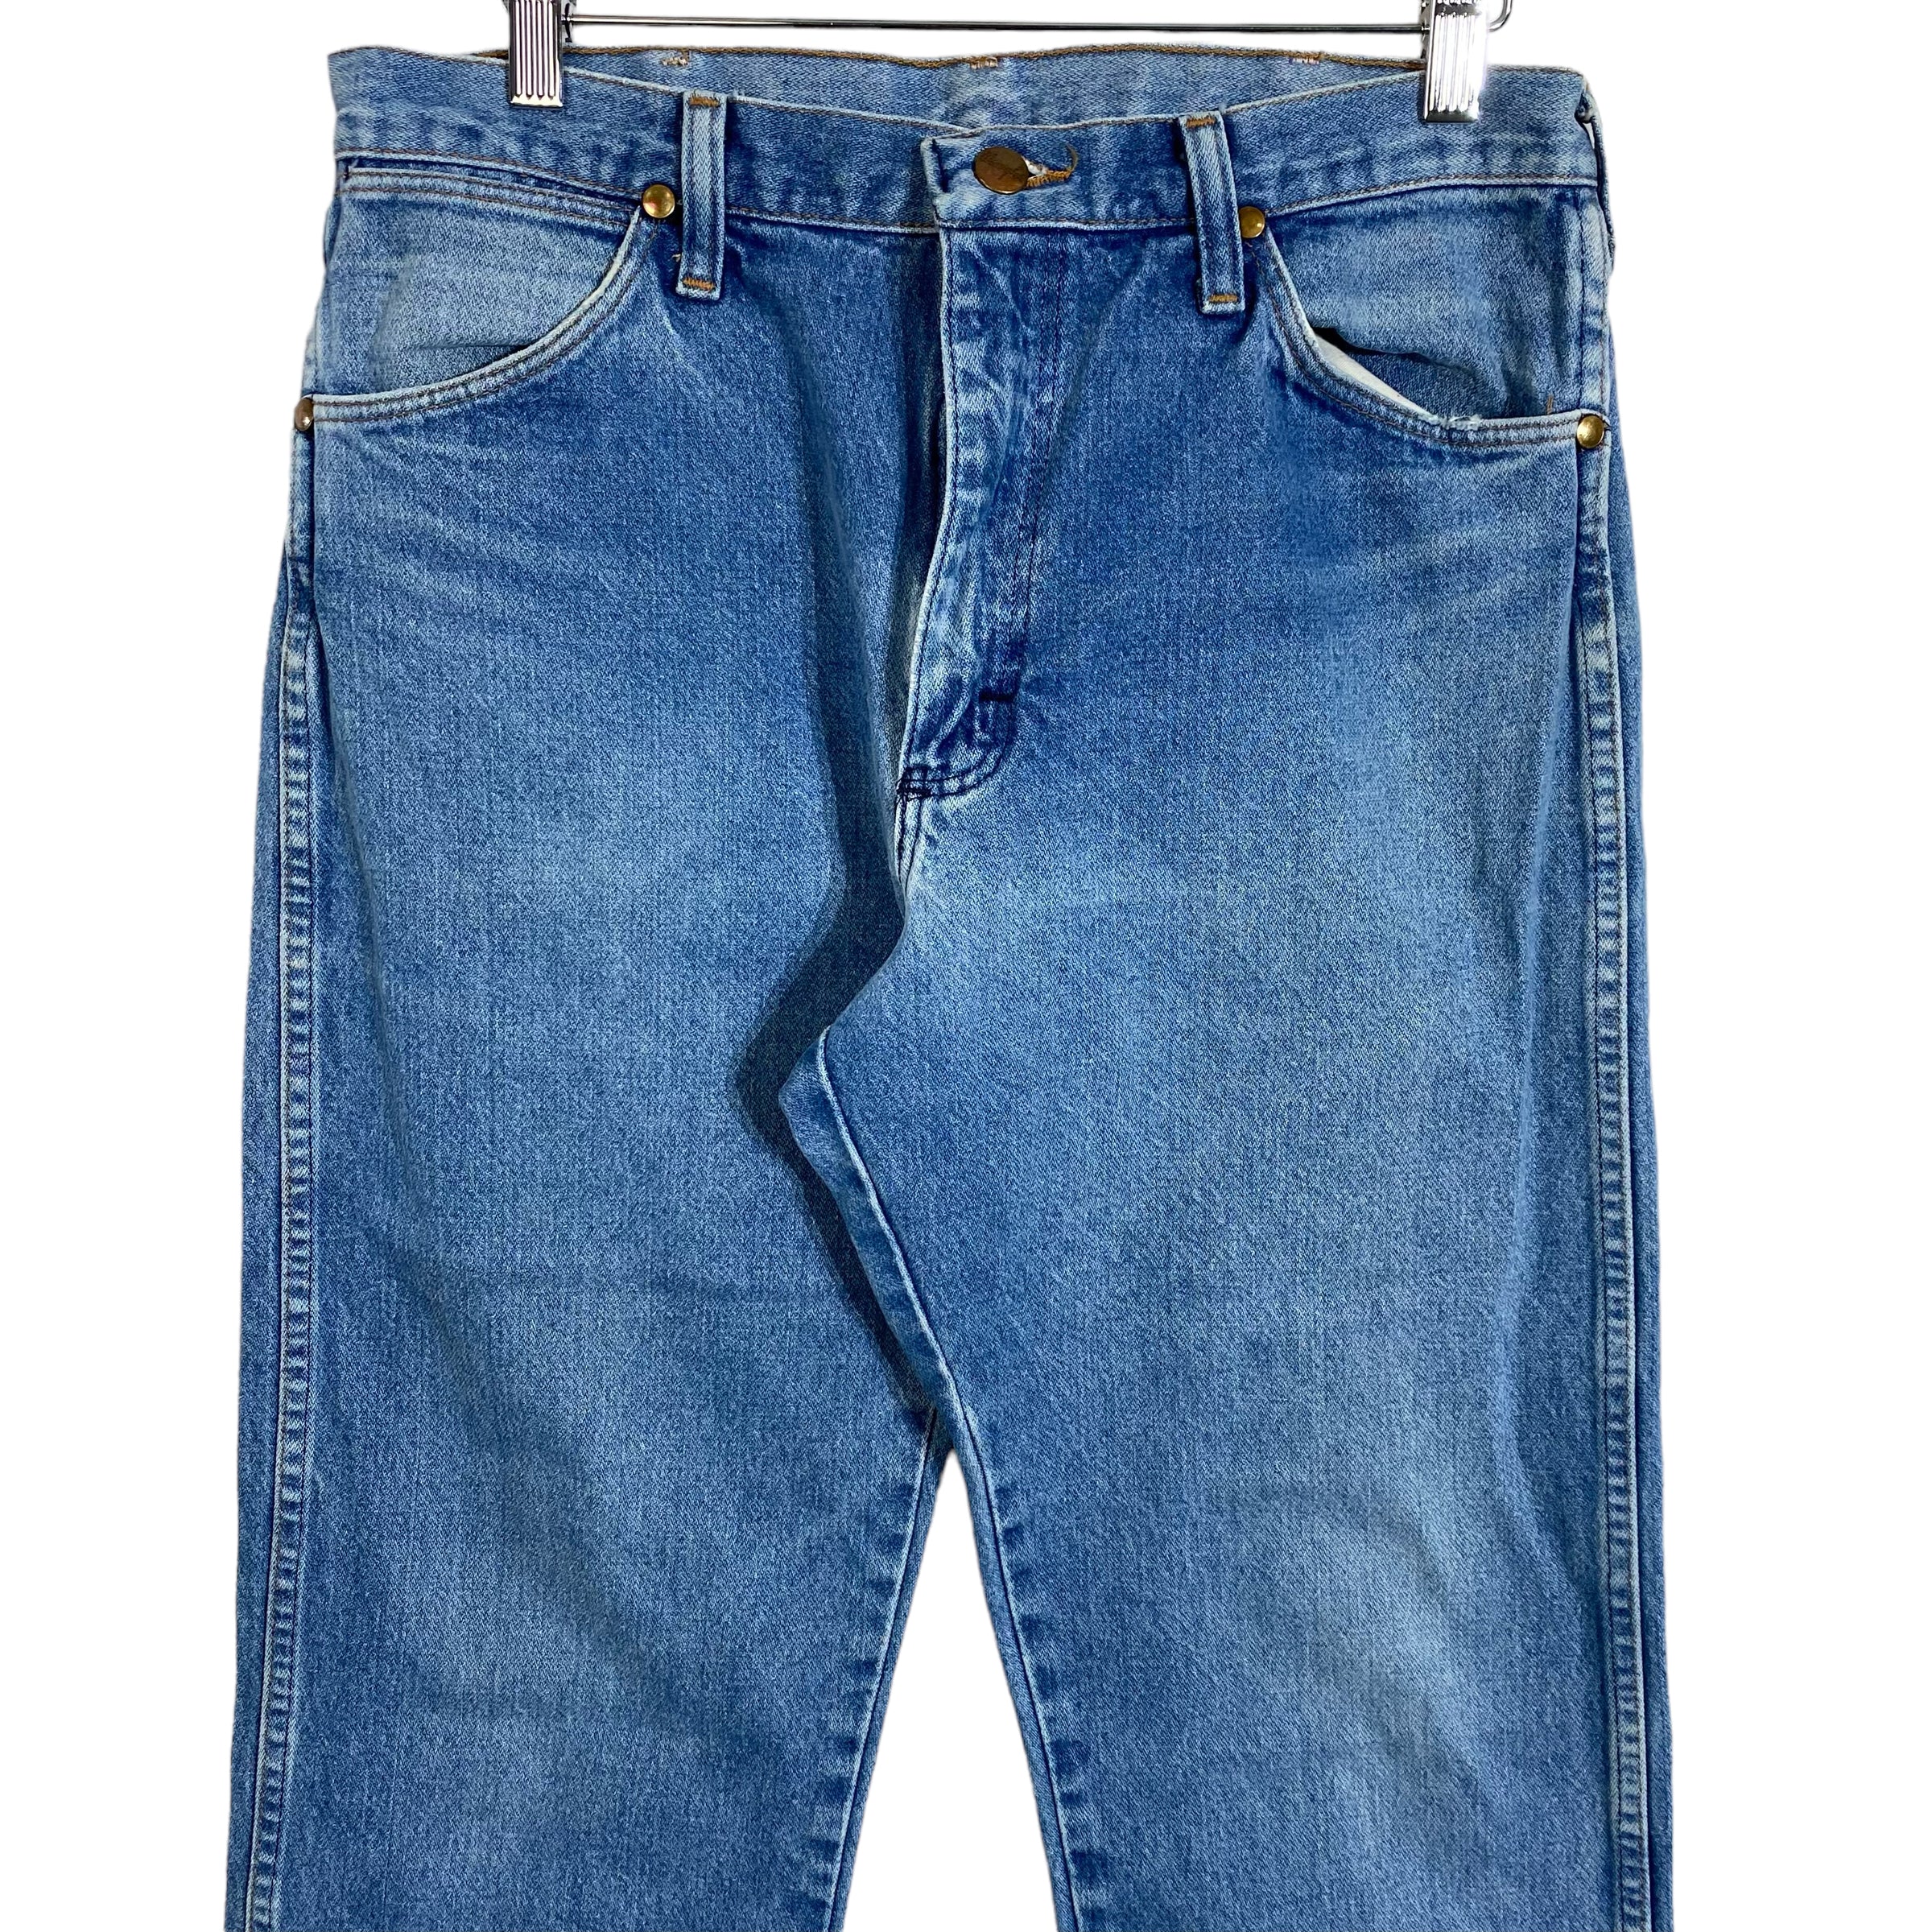 Wrangler Light Wash Straight Leg Denim Jeans